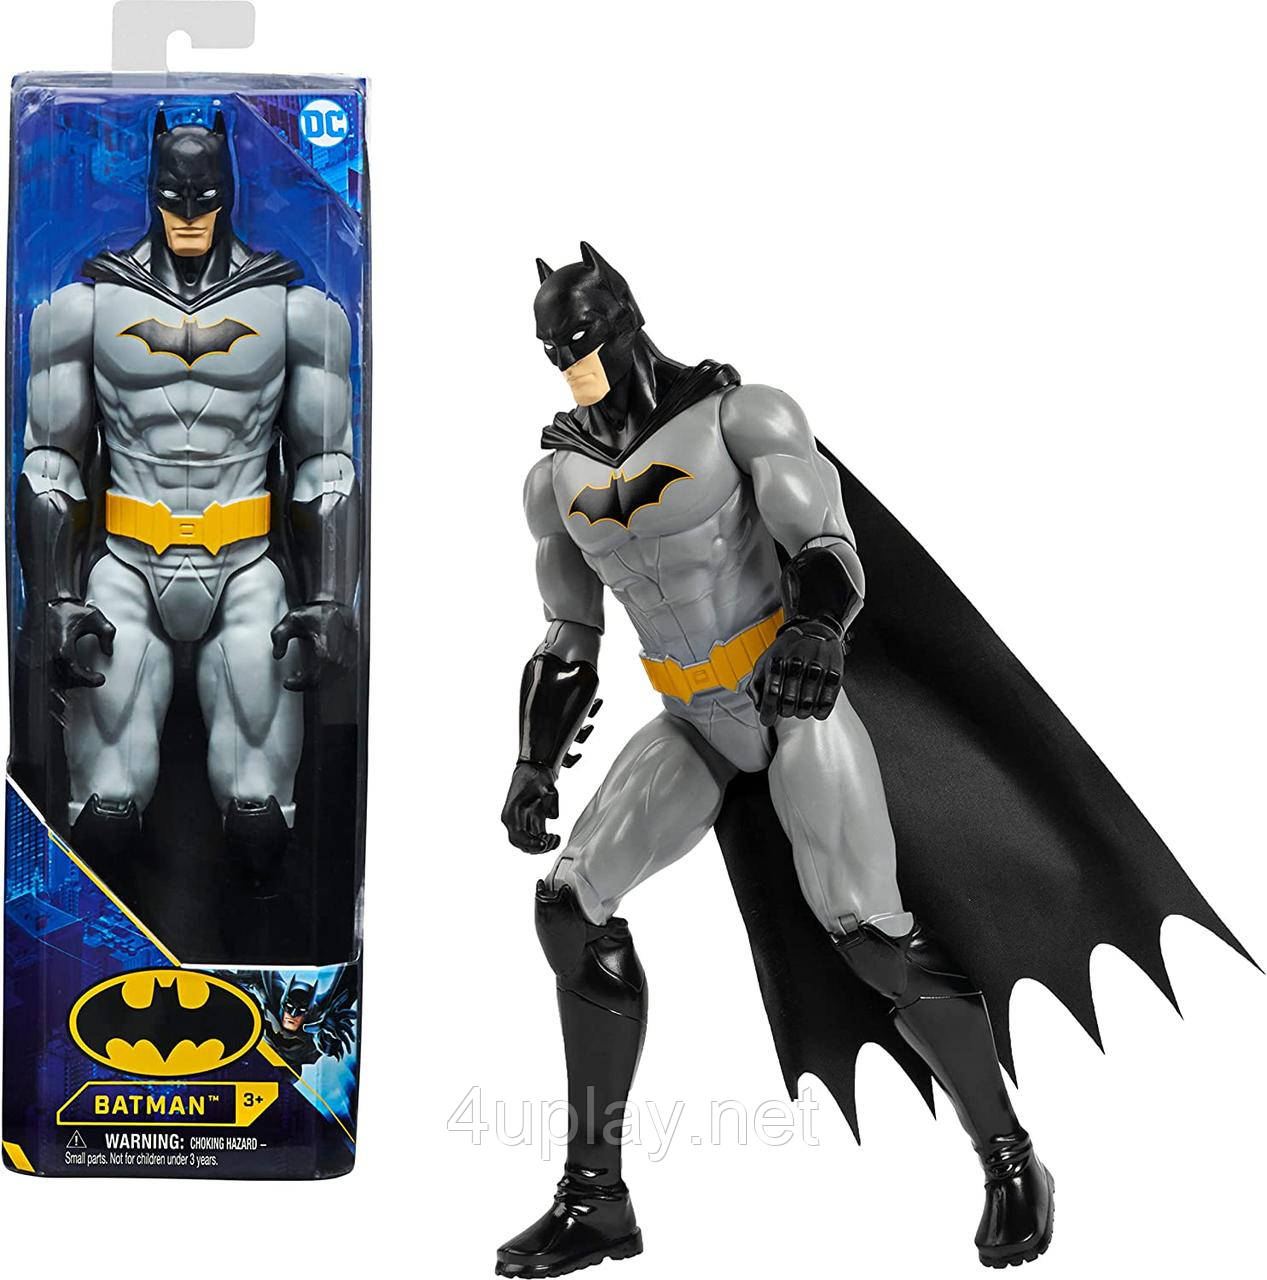 Ігрова фігурка Бетмен 30см. Batman 12-inch Rebirth Batman Action Figure. 11 точок артикуляції